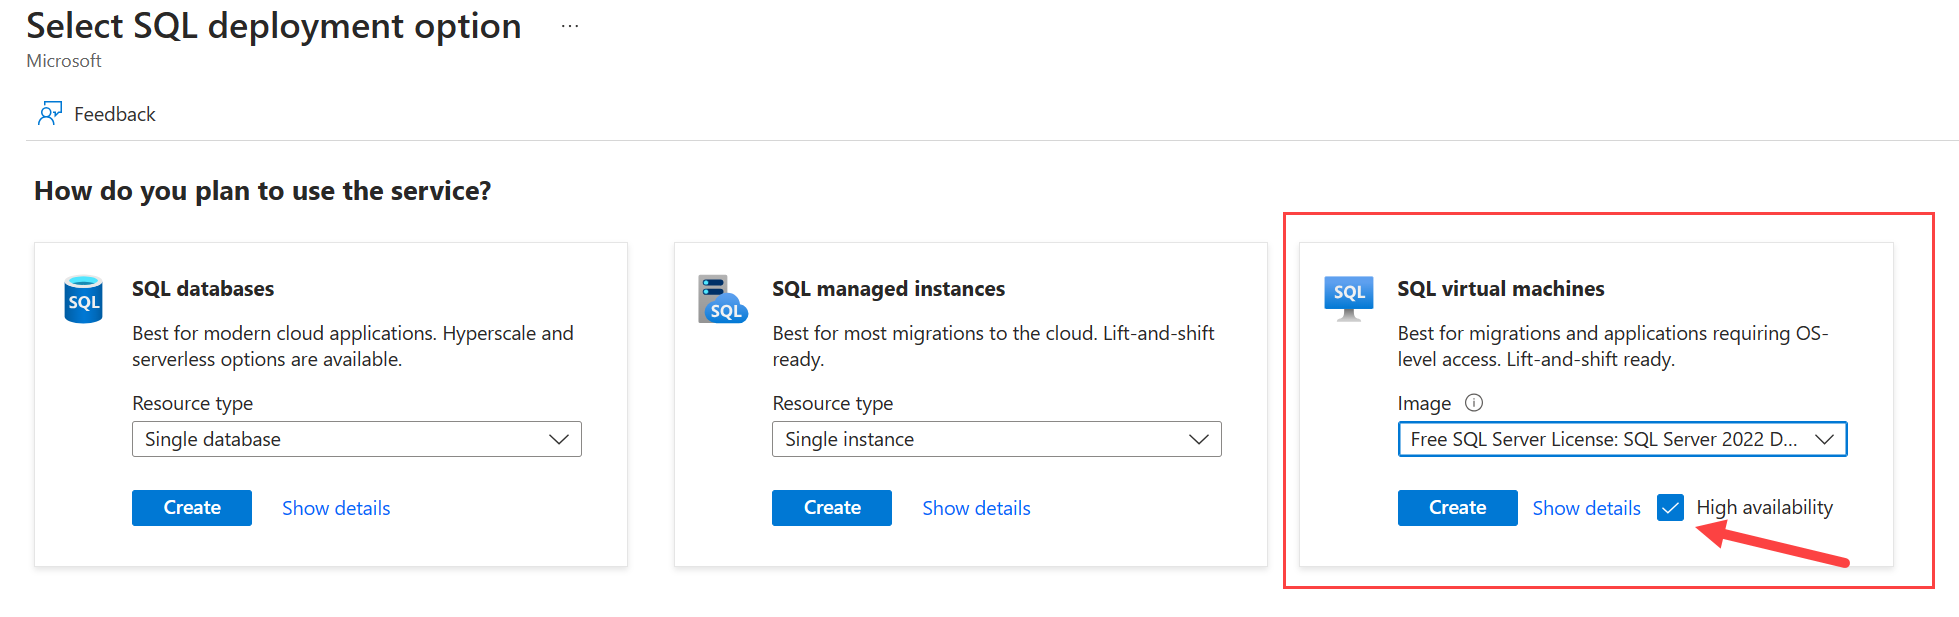 Zrzut ekranu witryny Azure Portal przedstawiający stronę wybierania opcji wdrożenia programu SQL Server z wybraną wysoką dostępnością. 